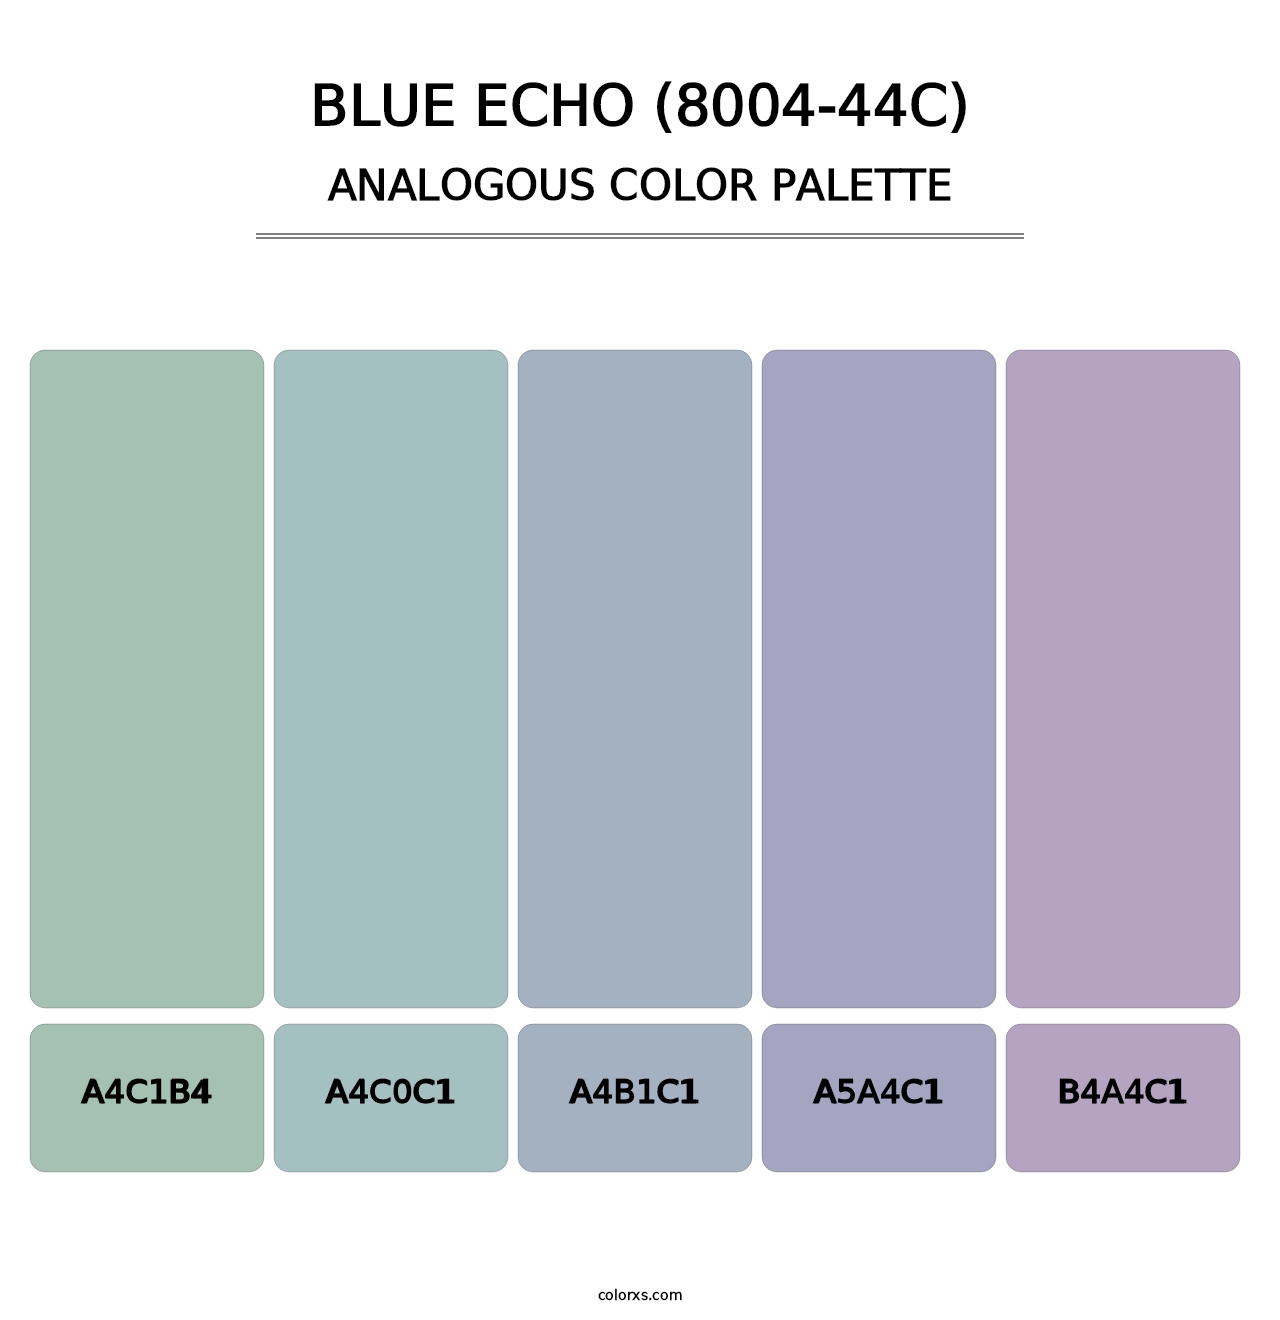 Blue Echo (8004-44C) - Analogous Color Palette